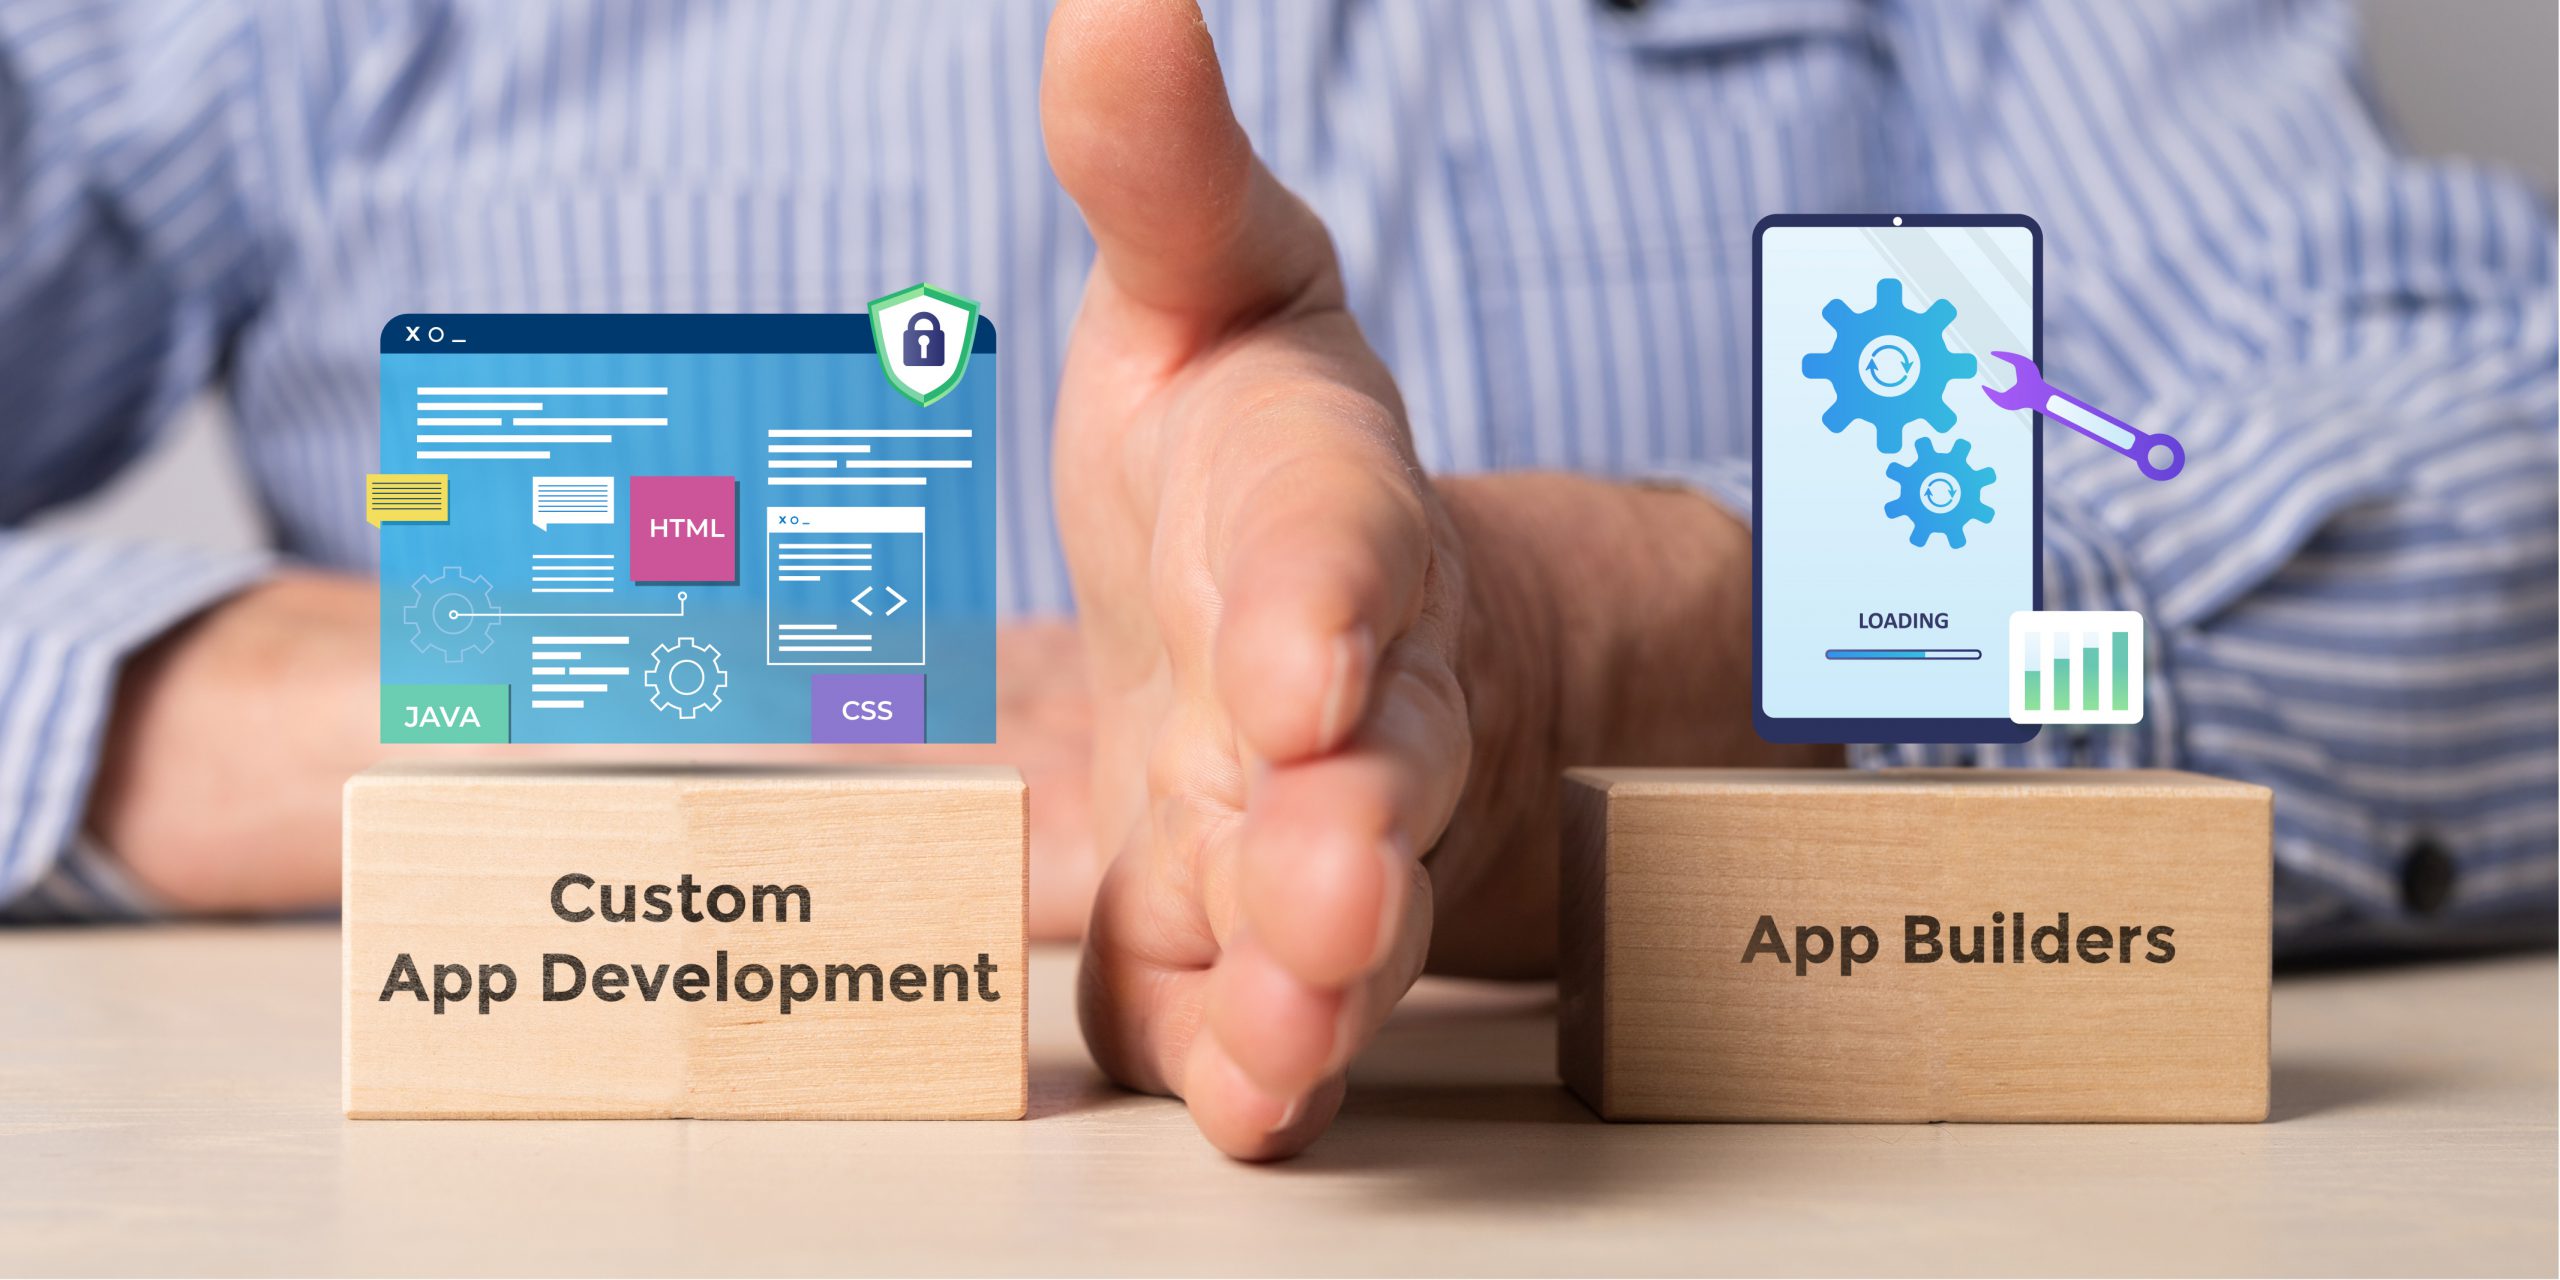 Things to Know: Custom App Development vs App Builders